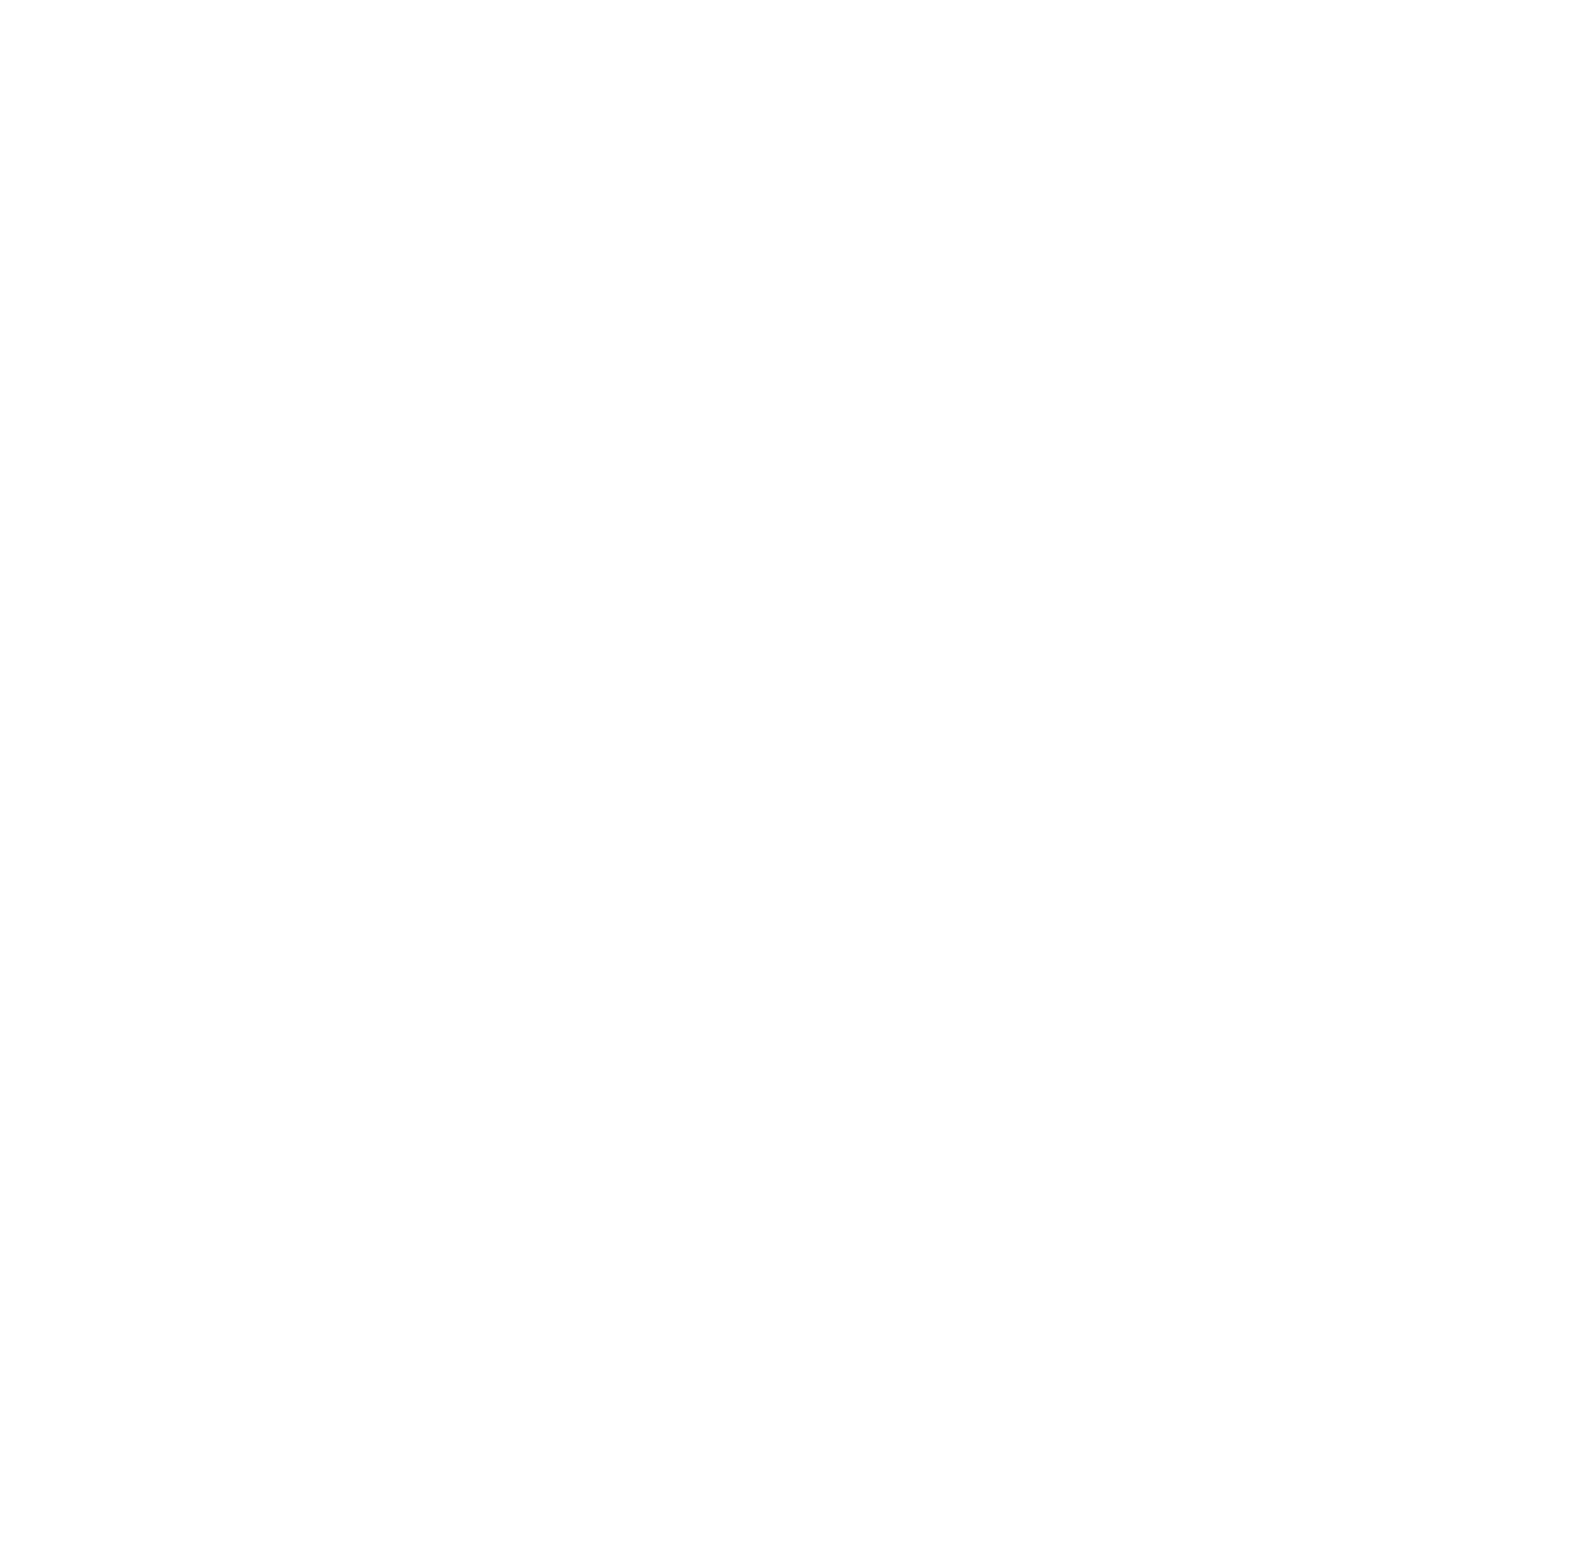 Apyx Medical logo for dark backgrounds (transparent PNG)